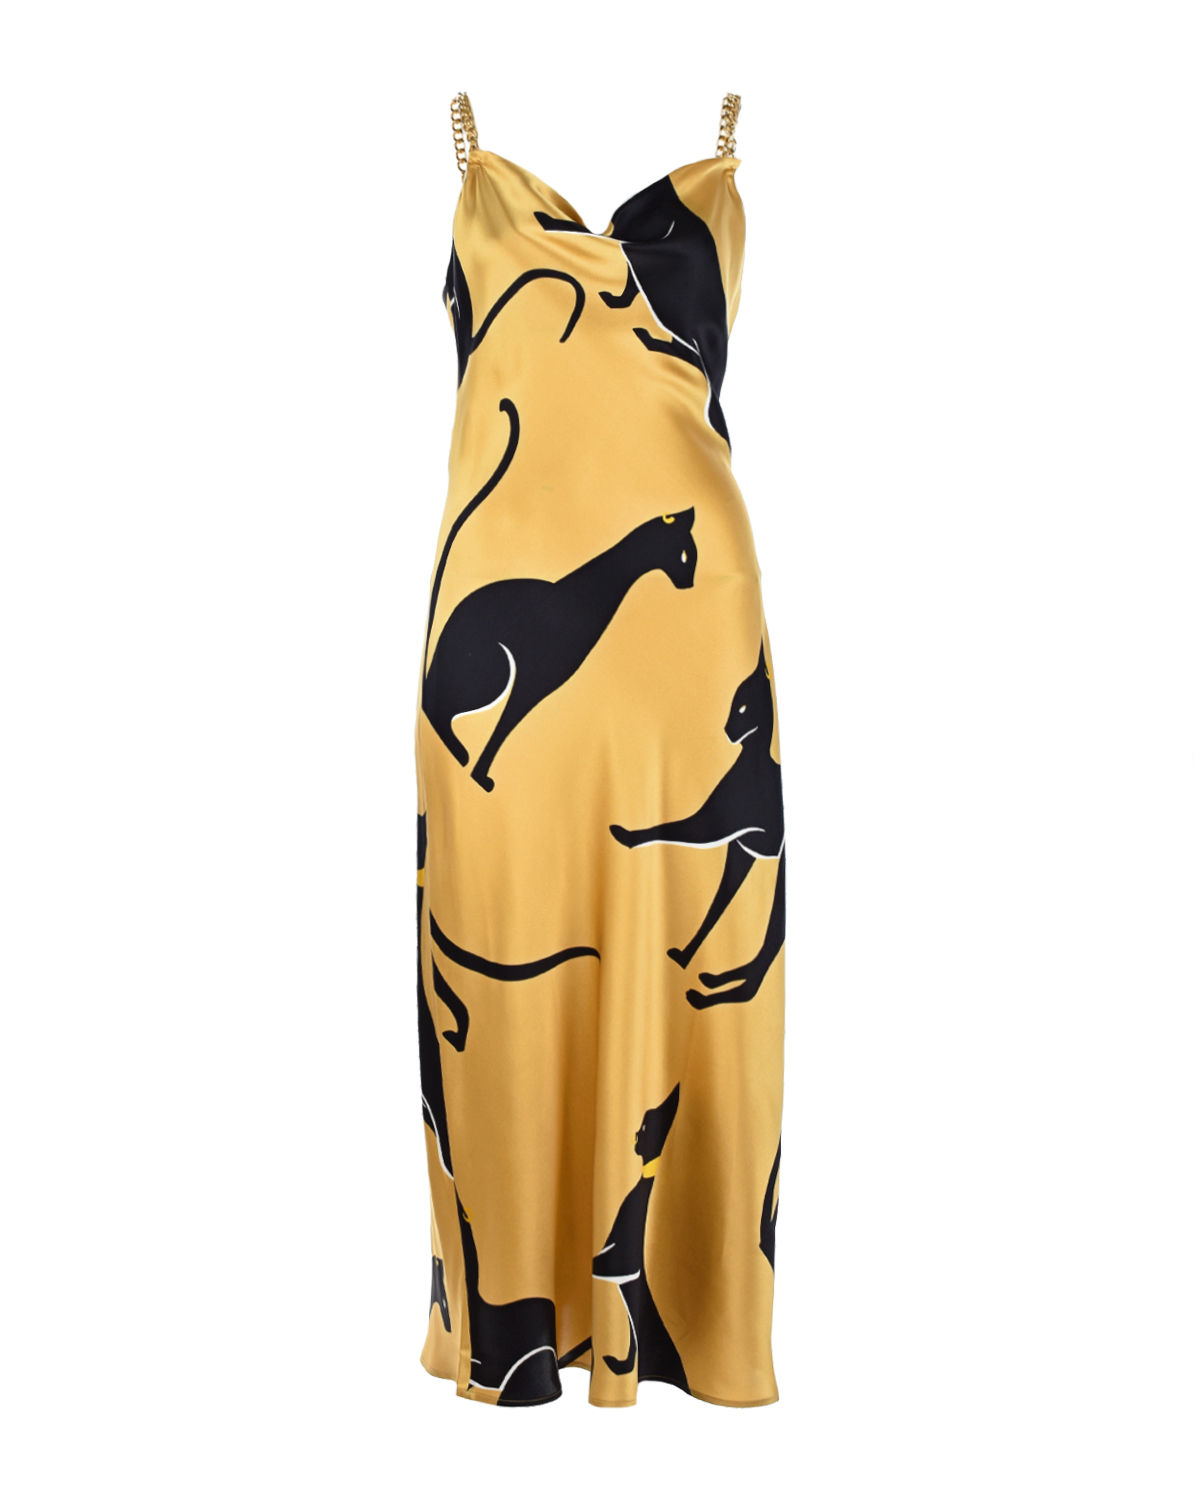 Шелковое платье с принтом "кошки" Olivia von Halle, размер 40, цвет золотой - фото 1